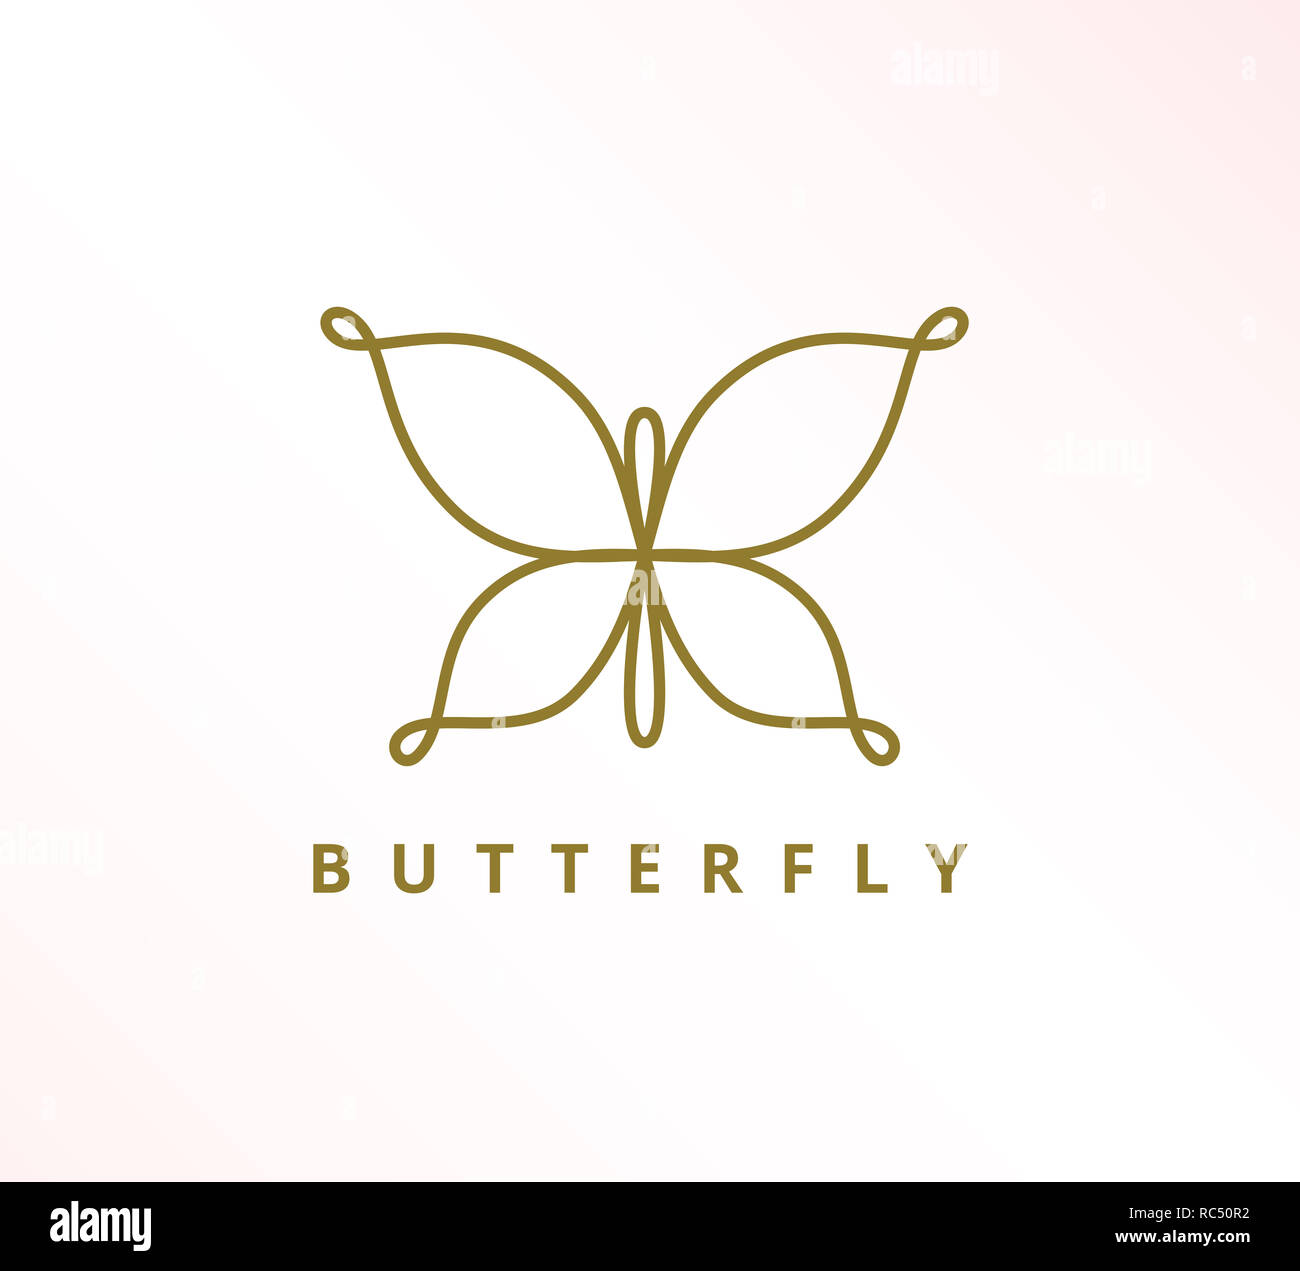 Semplice eleganza minimalista linea continua butterfly icona logo vettoriale del modello di progettazione Foto Stock